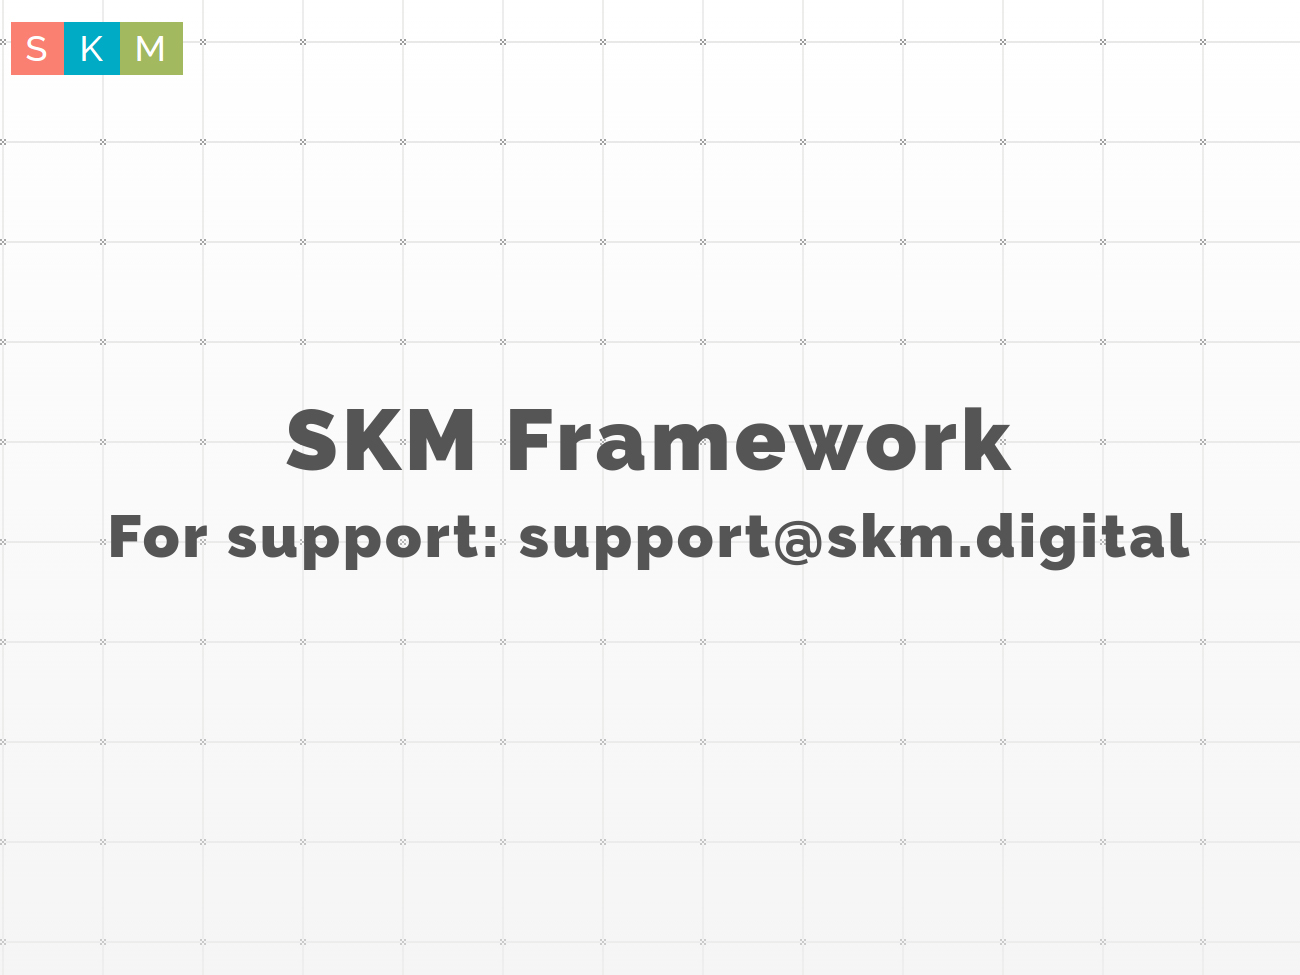 skm-framework-wordpress-theme-dqonw-o.jpg